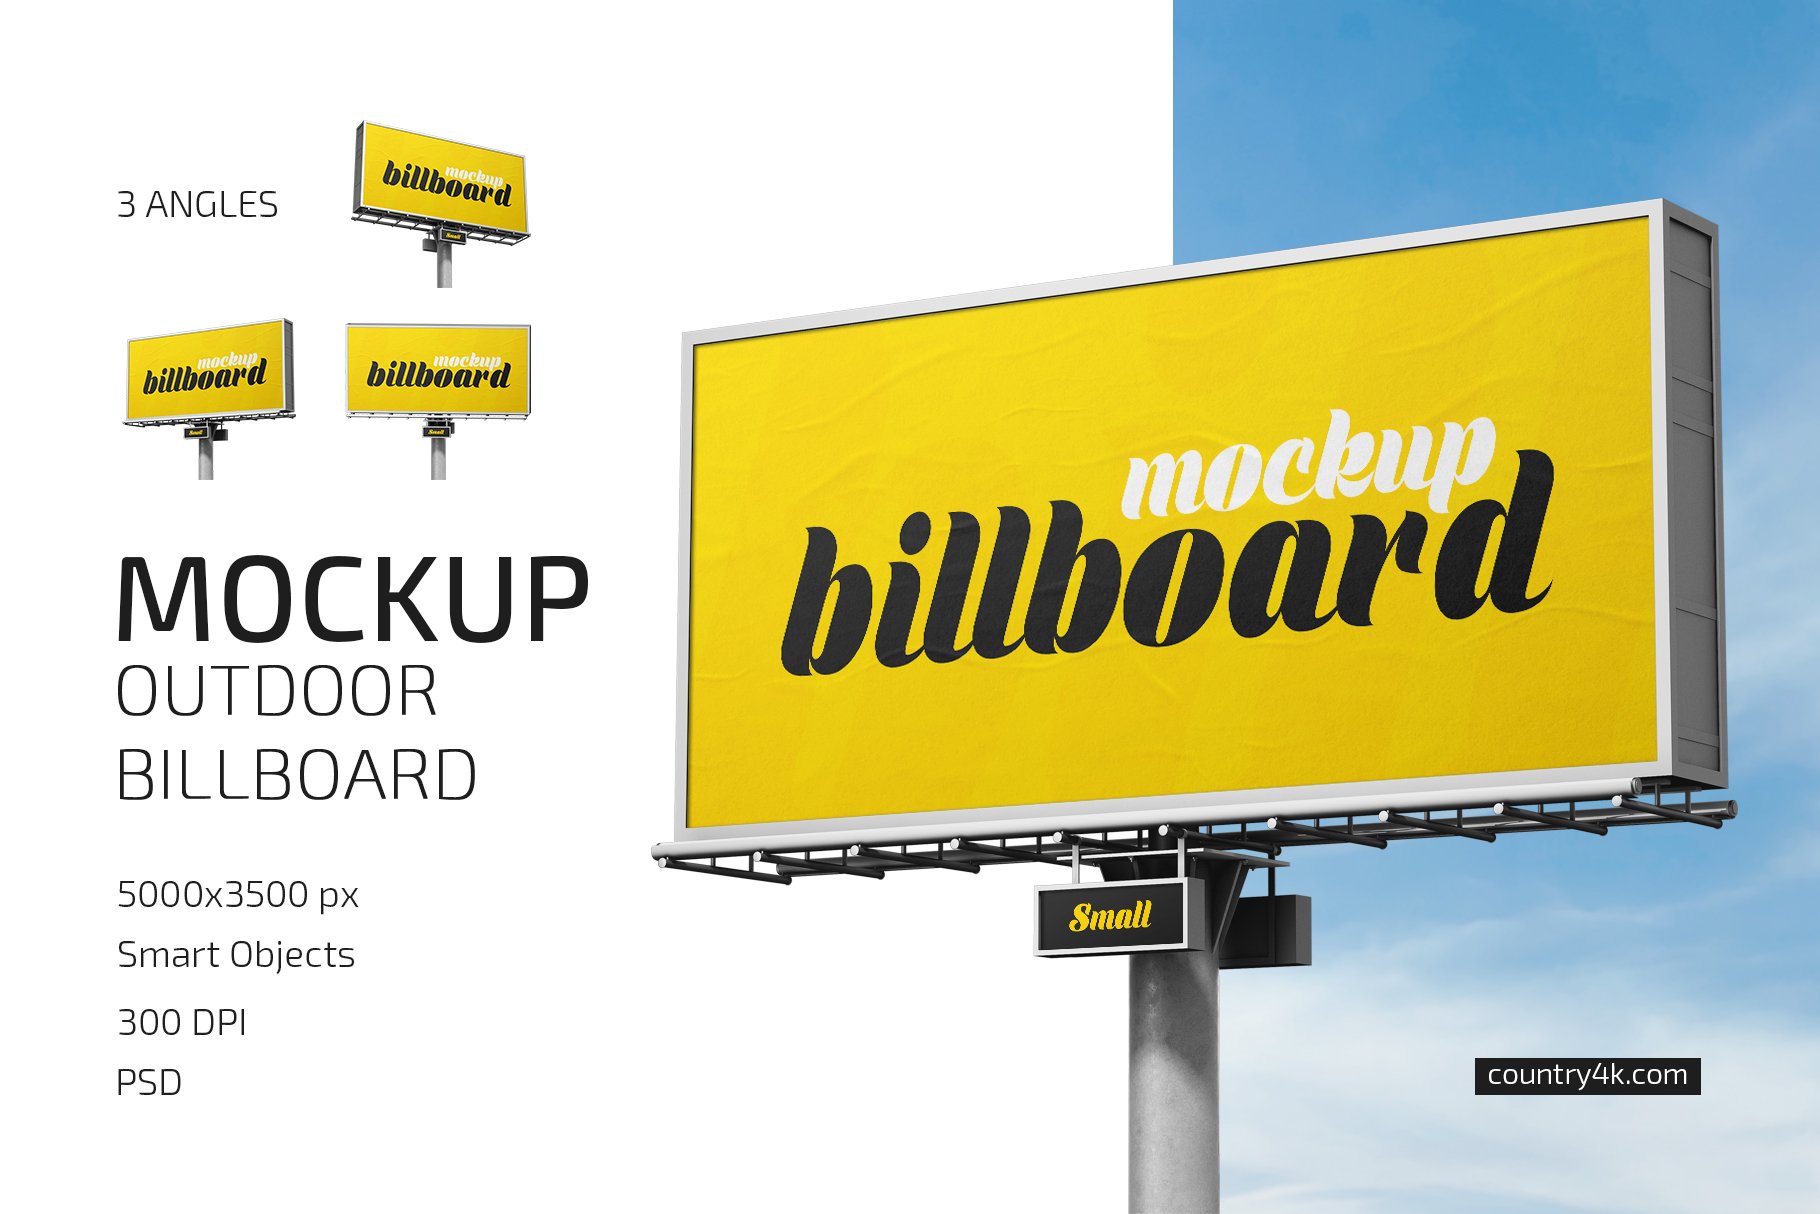 Outdoor Billboard Mockup Set cover image.